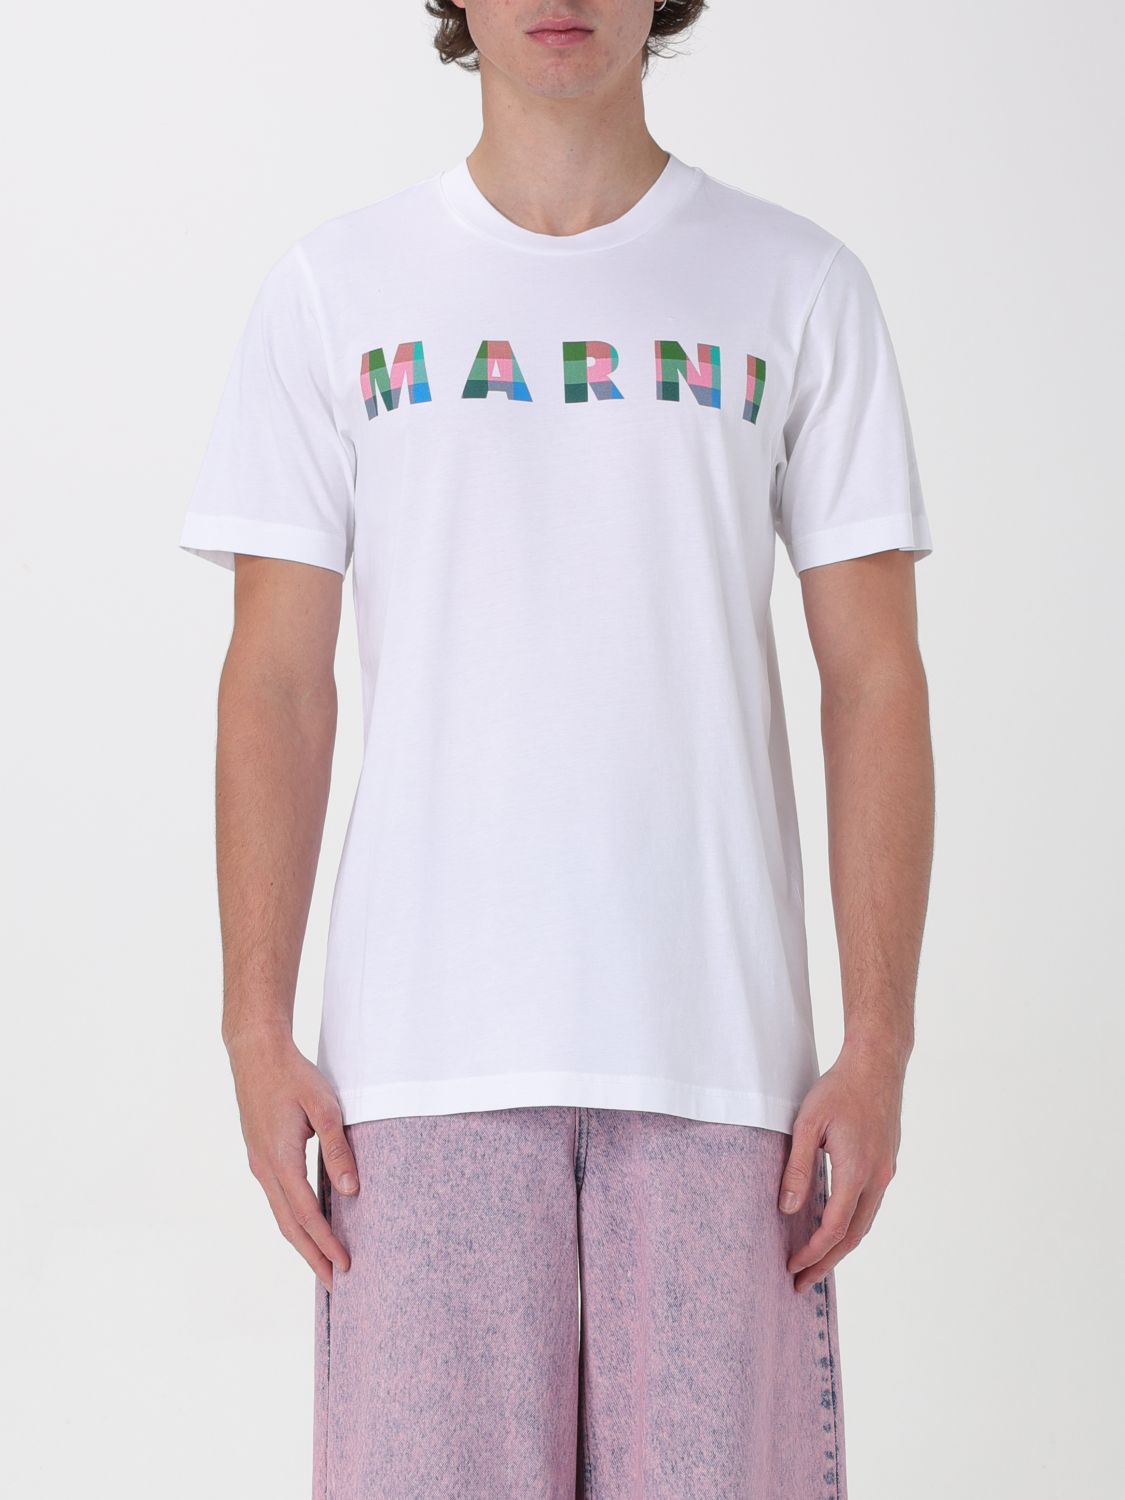 Marni T-Shirt MARNI Men color White